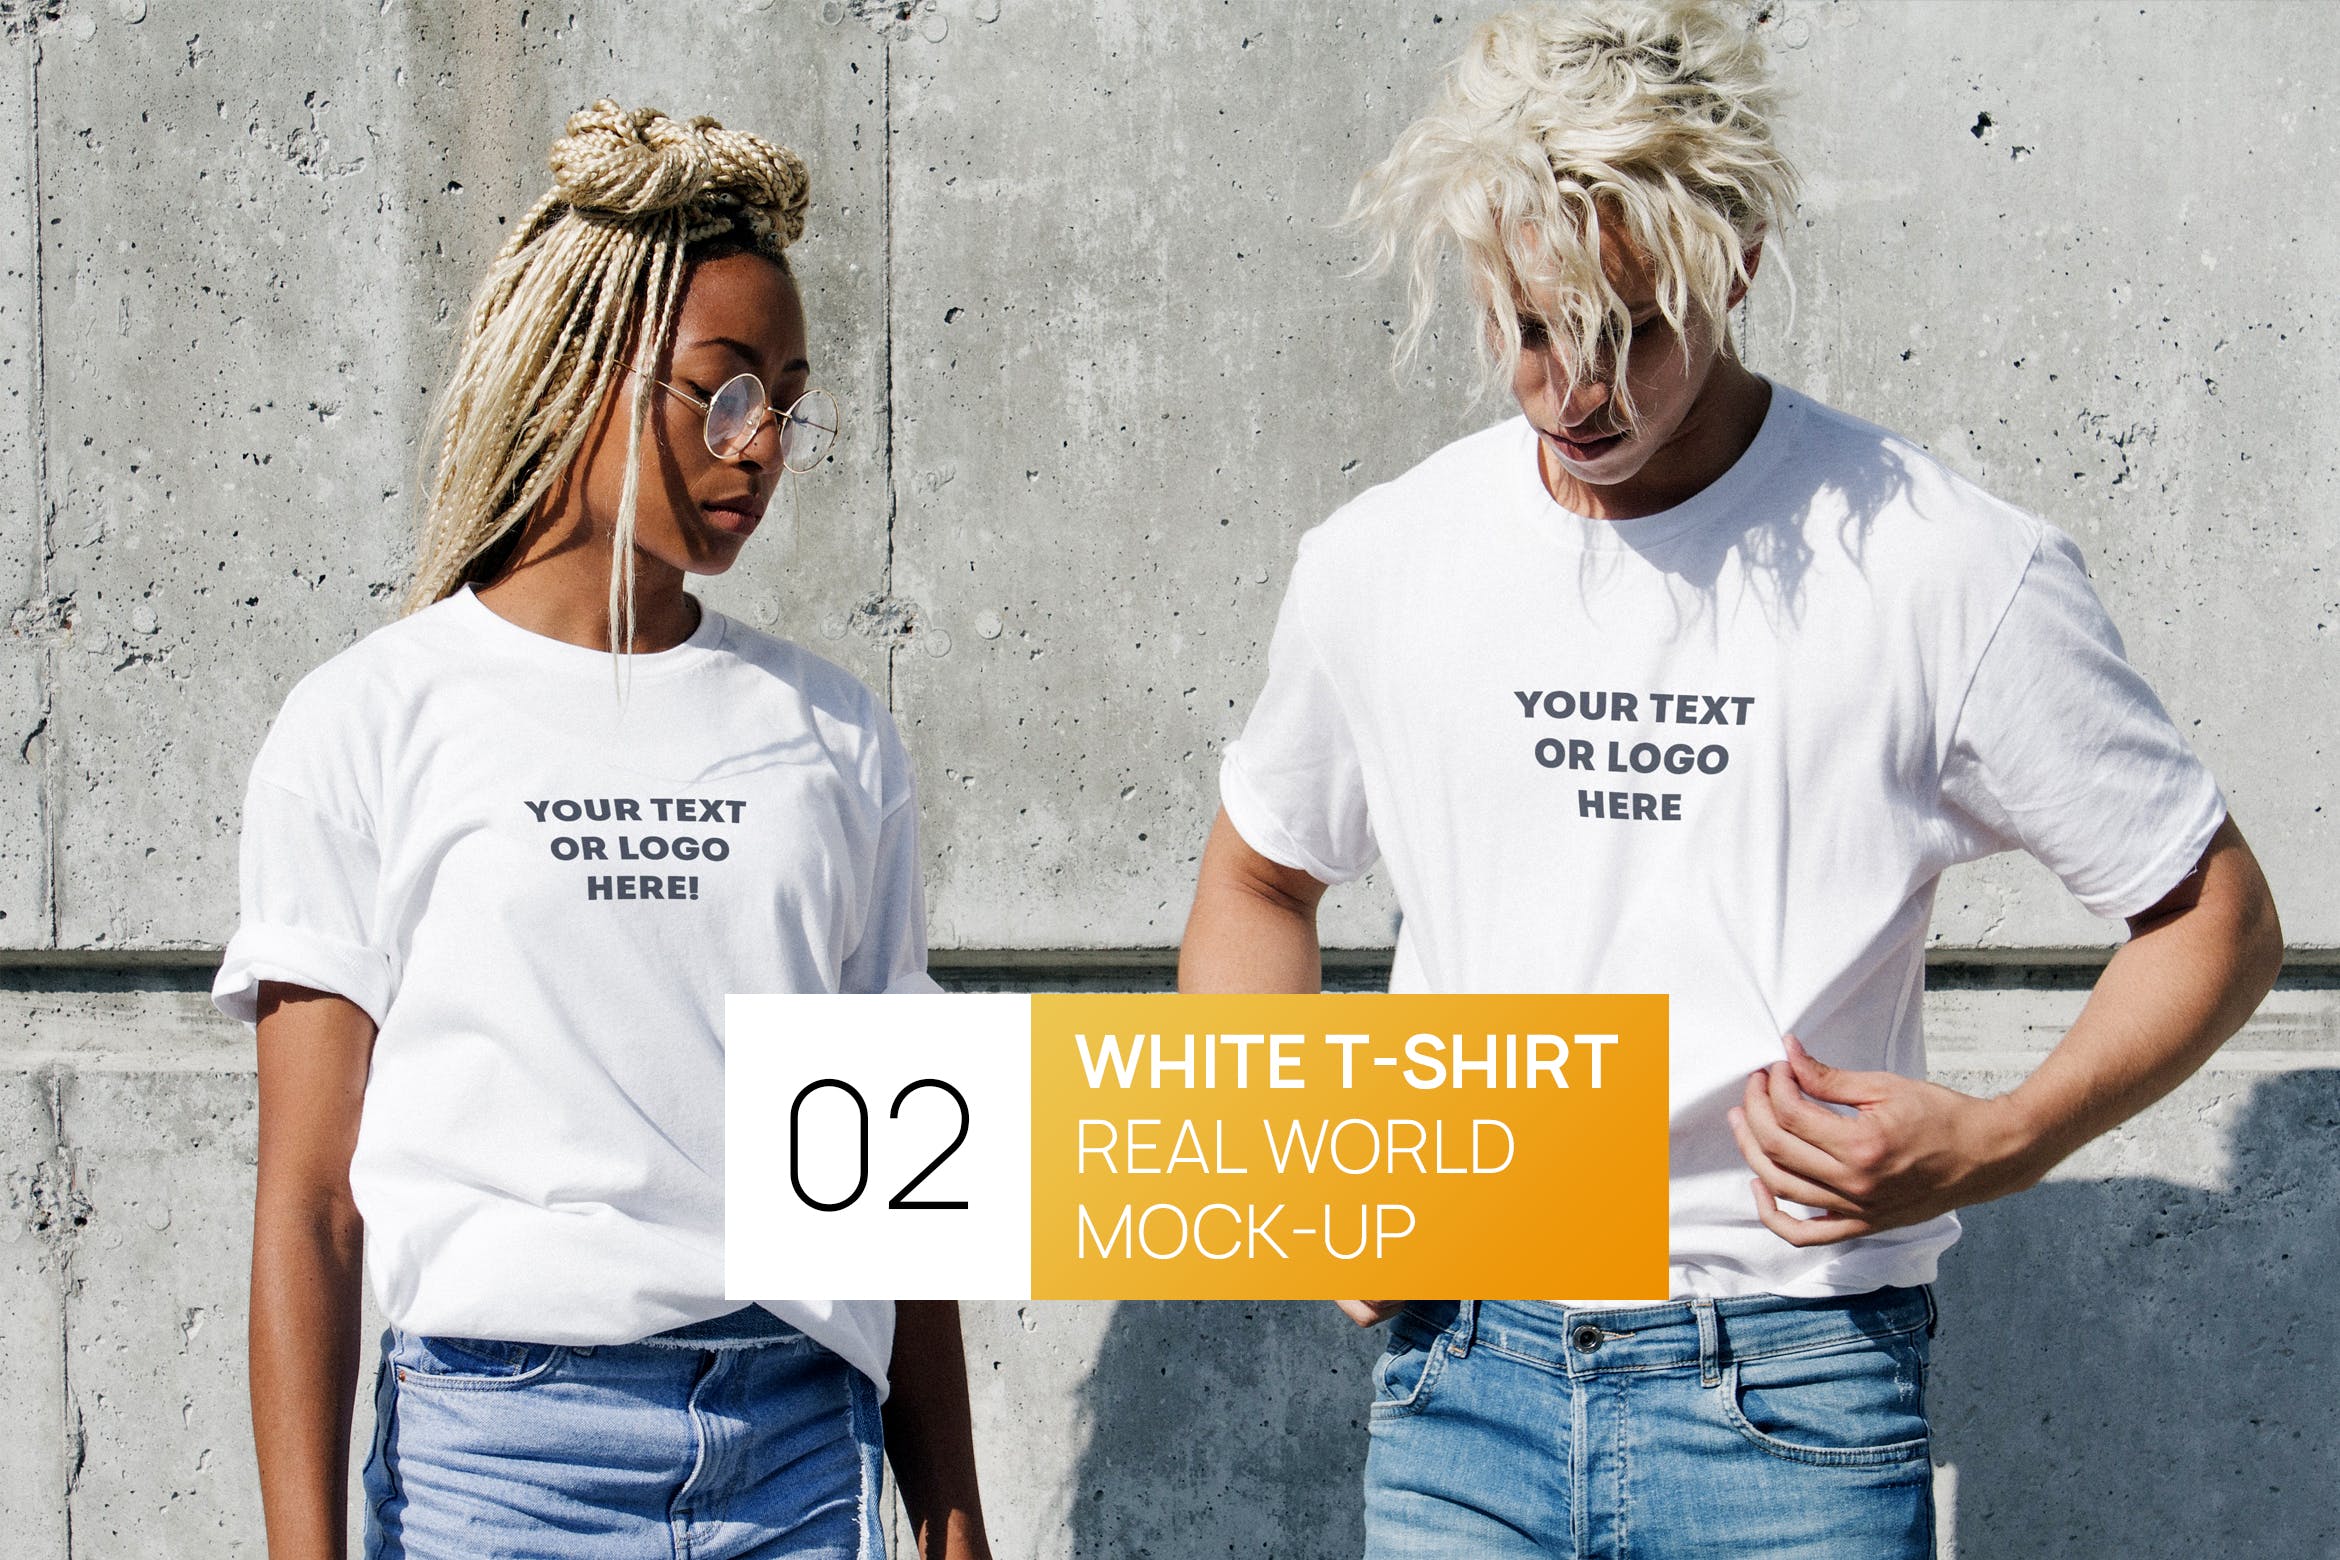 情侣T恤服装设计效果图样机非凡图库精选 Two Persons White T-Shirt Real World Photo Mock-up插图